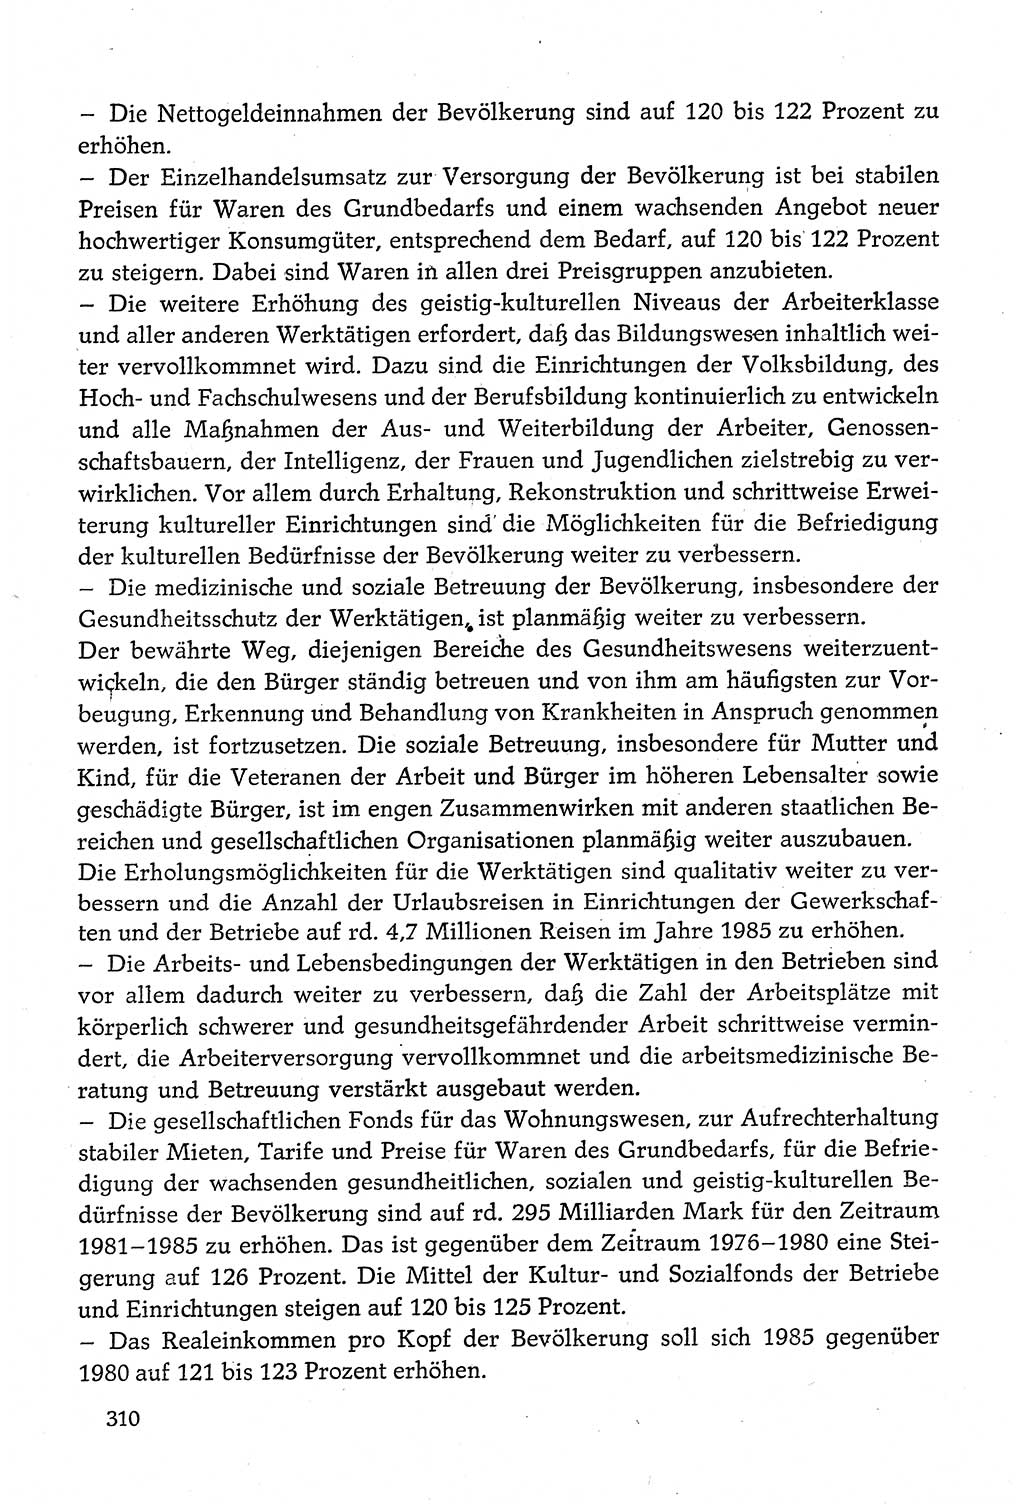 Dokumente der Sozialistischen Einheitspartei Deutschlands (SED) [Deutsche Demokratische Republik (DDR)] 1980-1981, Seite 310 (Dok. SED DDR 1980-1981, S. 310)